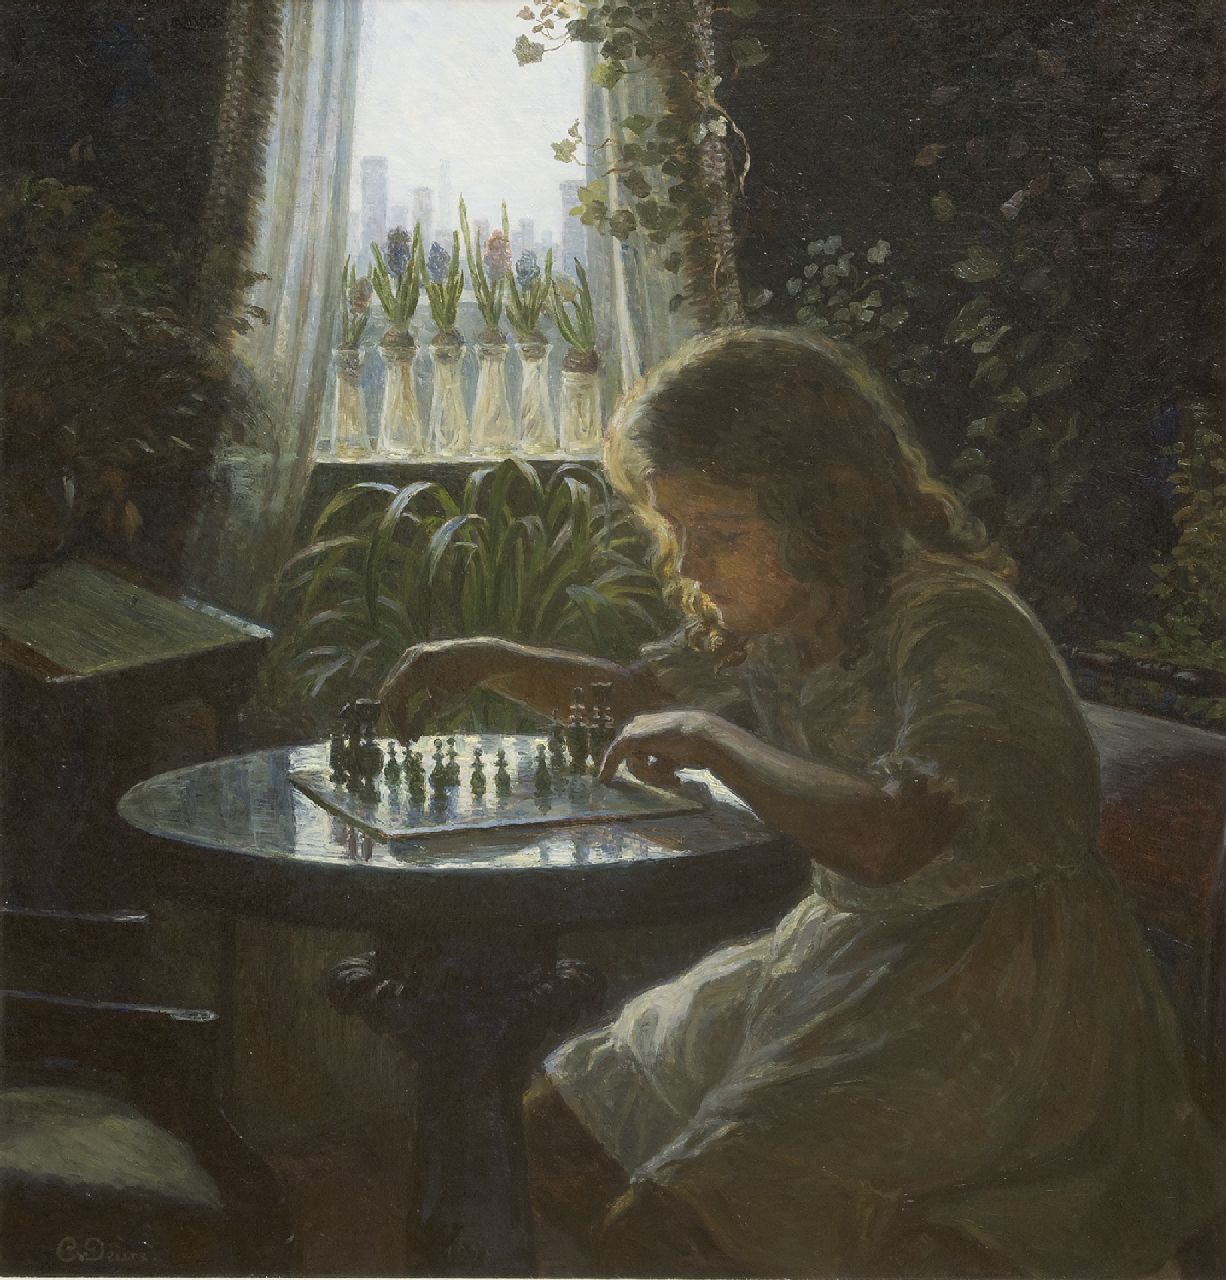 Caroline van Deurs | De jonge schaakster, olieverf op doek, 63,5 x 59,5 cm, gesigneerd l.o.